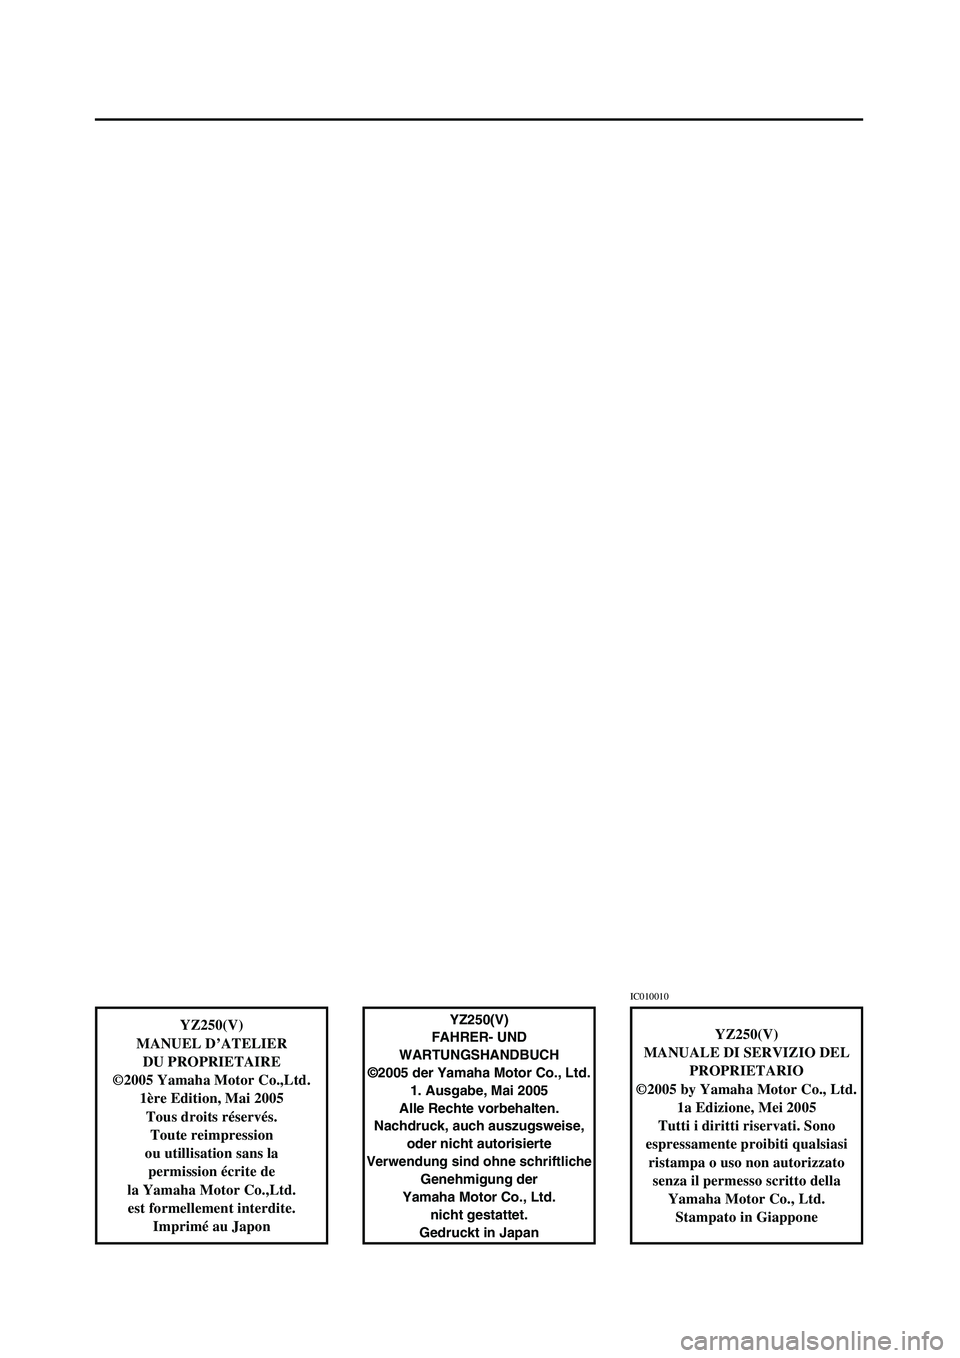 YAMAHA YZ250LC 2006  Owners Manual YZ250(V)
MANUEL D’ATELIER
DU PROPRIETAIRE
©2005 Yamaha Motor Co.,Ltd.
1ère Edition, Mai 2005
Tous droits réservés.
Toute reimpression
ou utillisation sans la 
permission écrite de
la Yamaha Mot